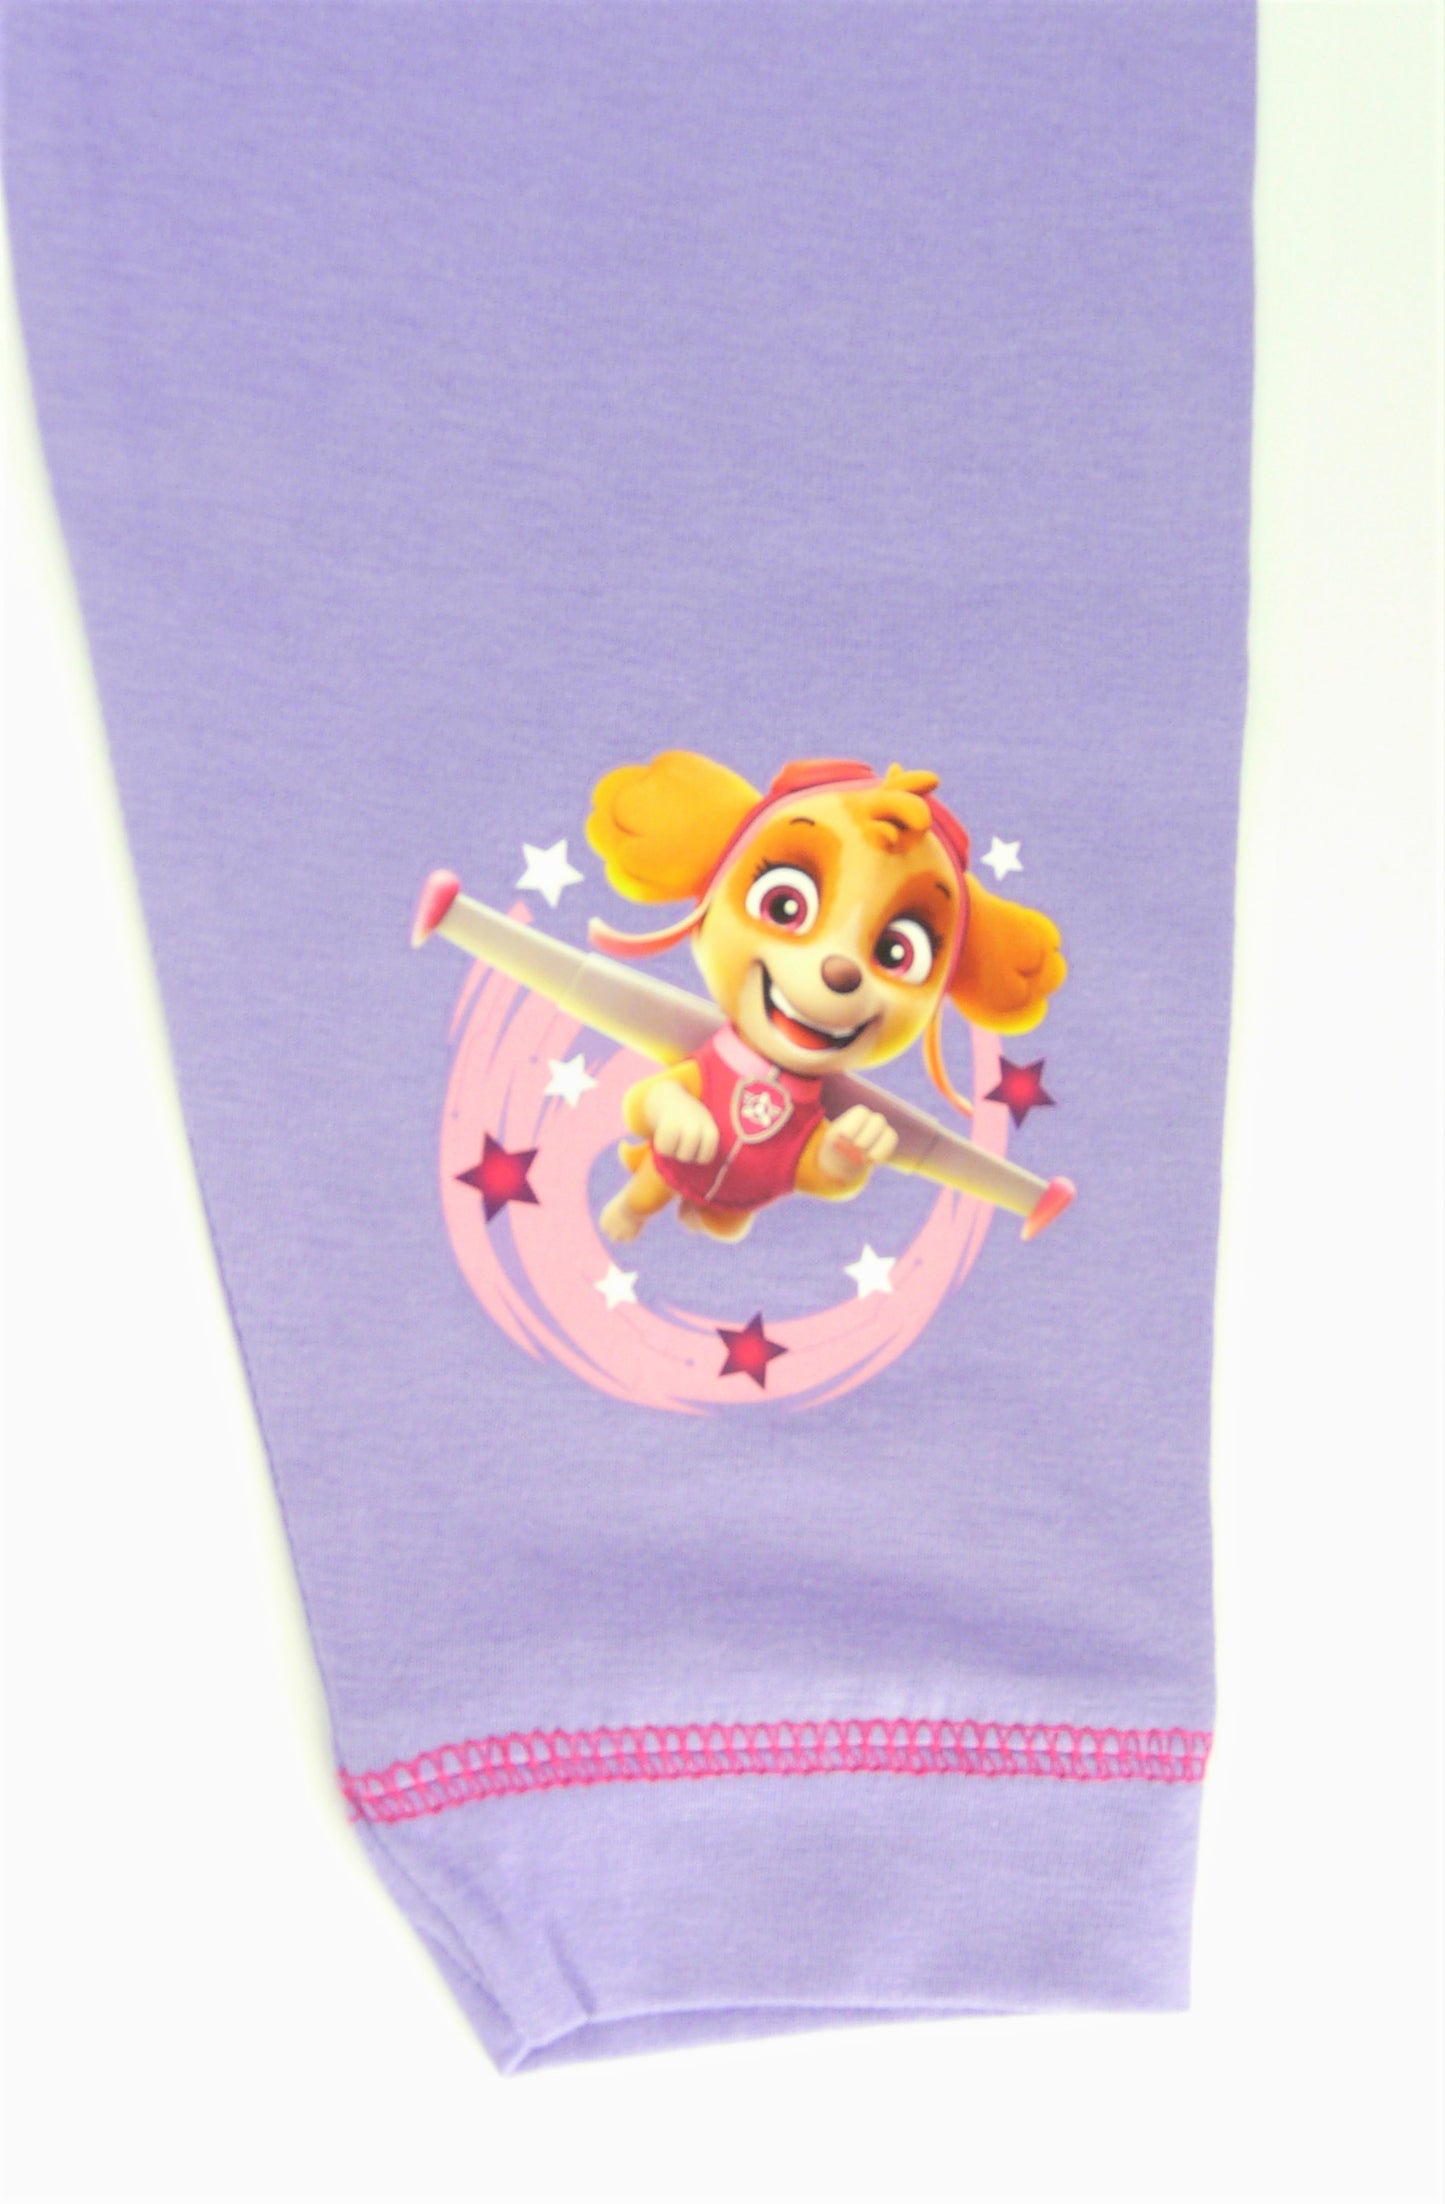 Paw Patrol Toddler Girl’s Cotton Pyjamas, 1-5 Years, Stocking Filler Gift Idea